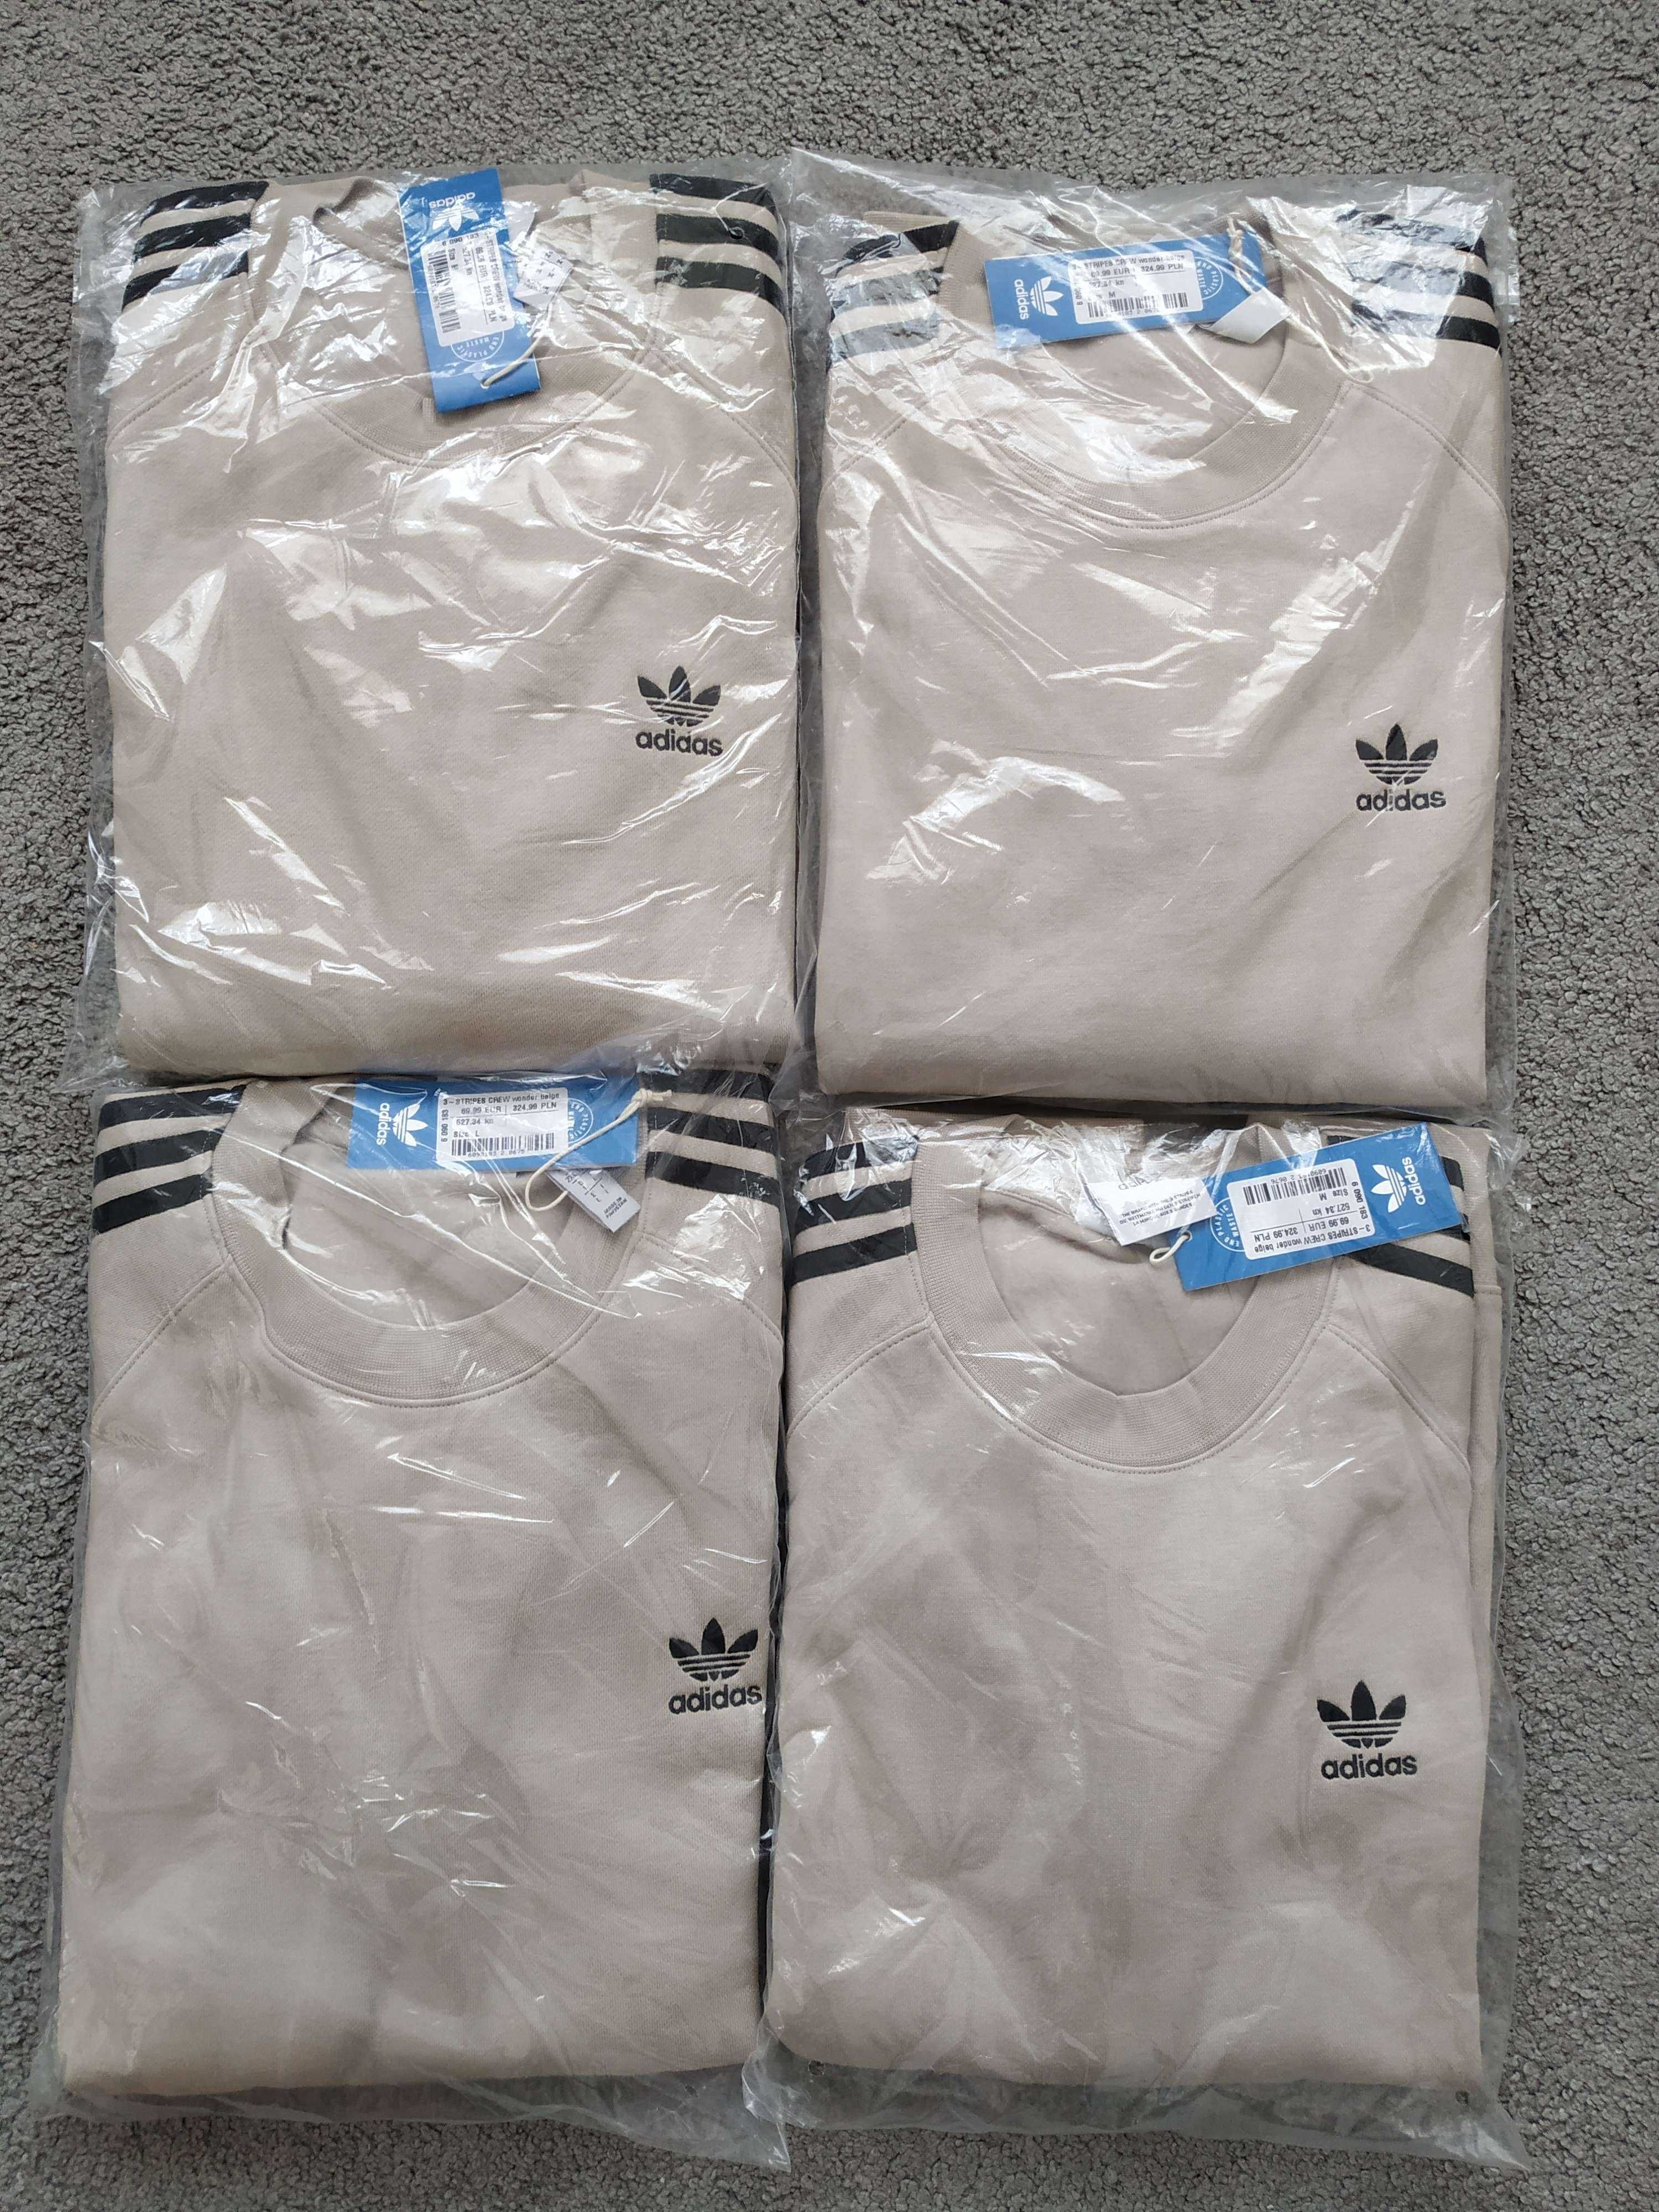 Bluza Adidas Classic 3 Stripes S, M, L, XL